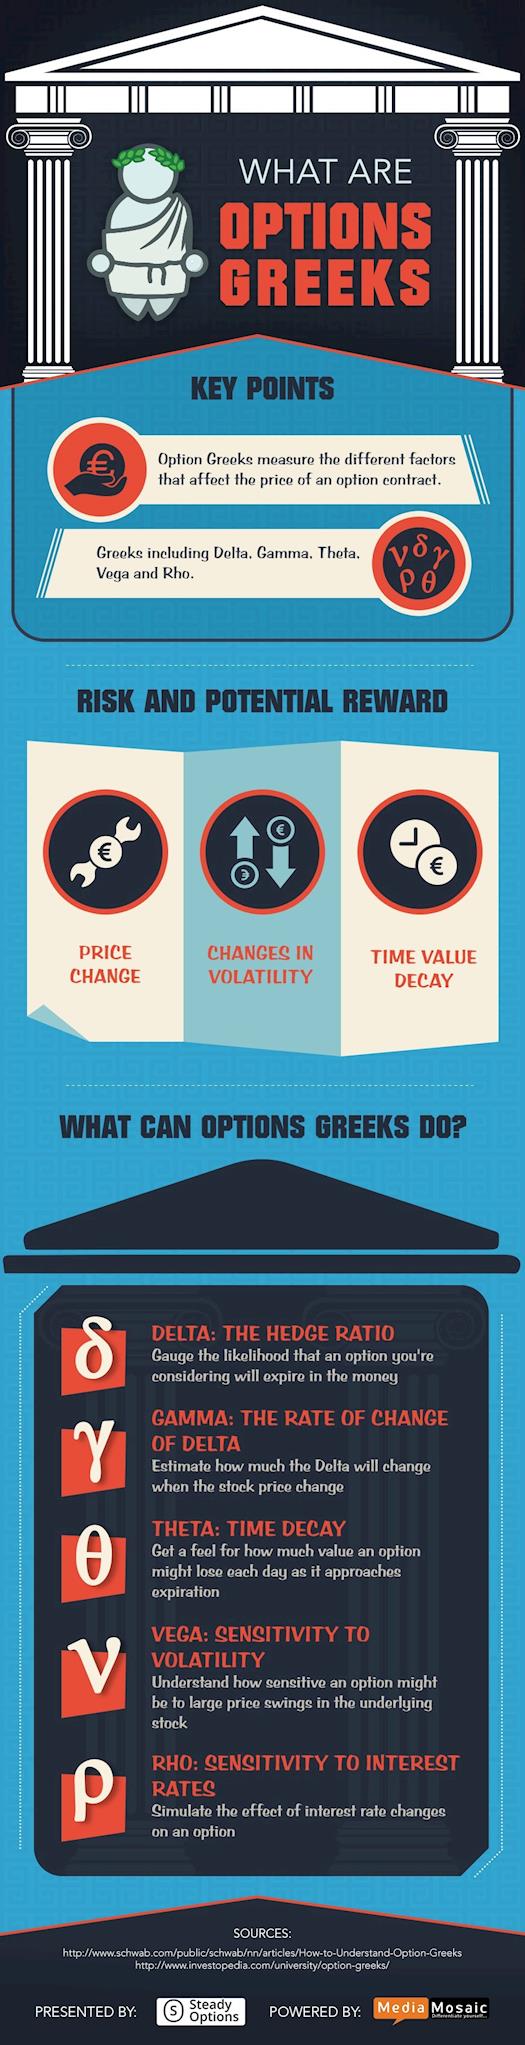 Options Greeks Explained